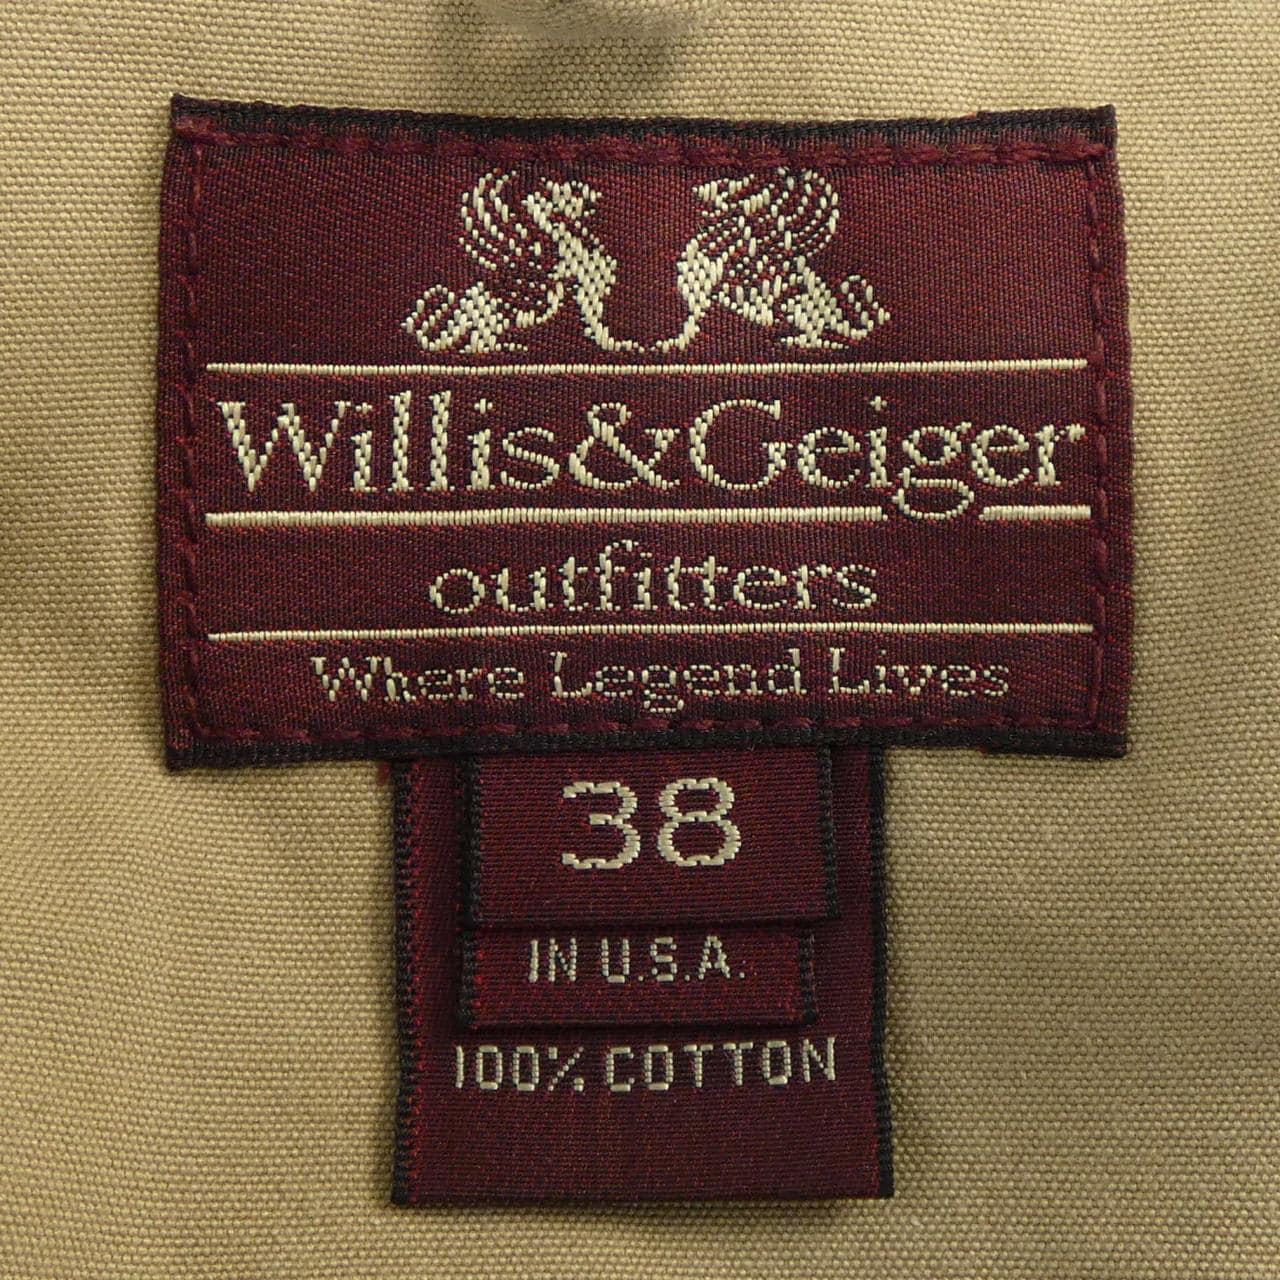 ウィリスアンドゲイガー WILLIS & GEIGER ジャケット